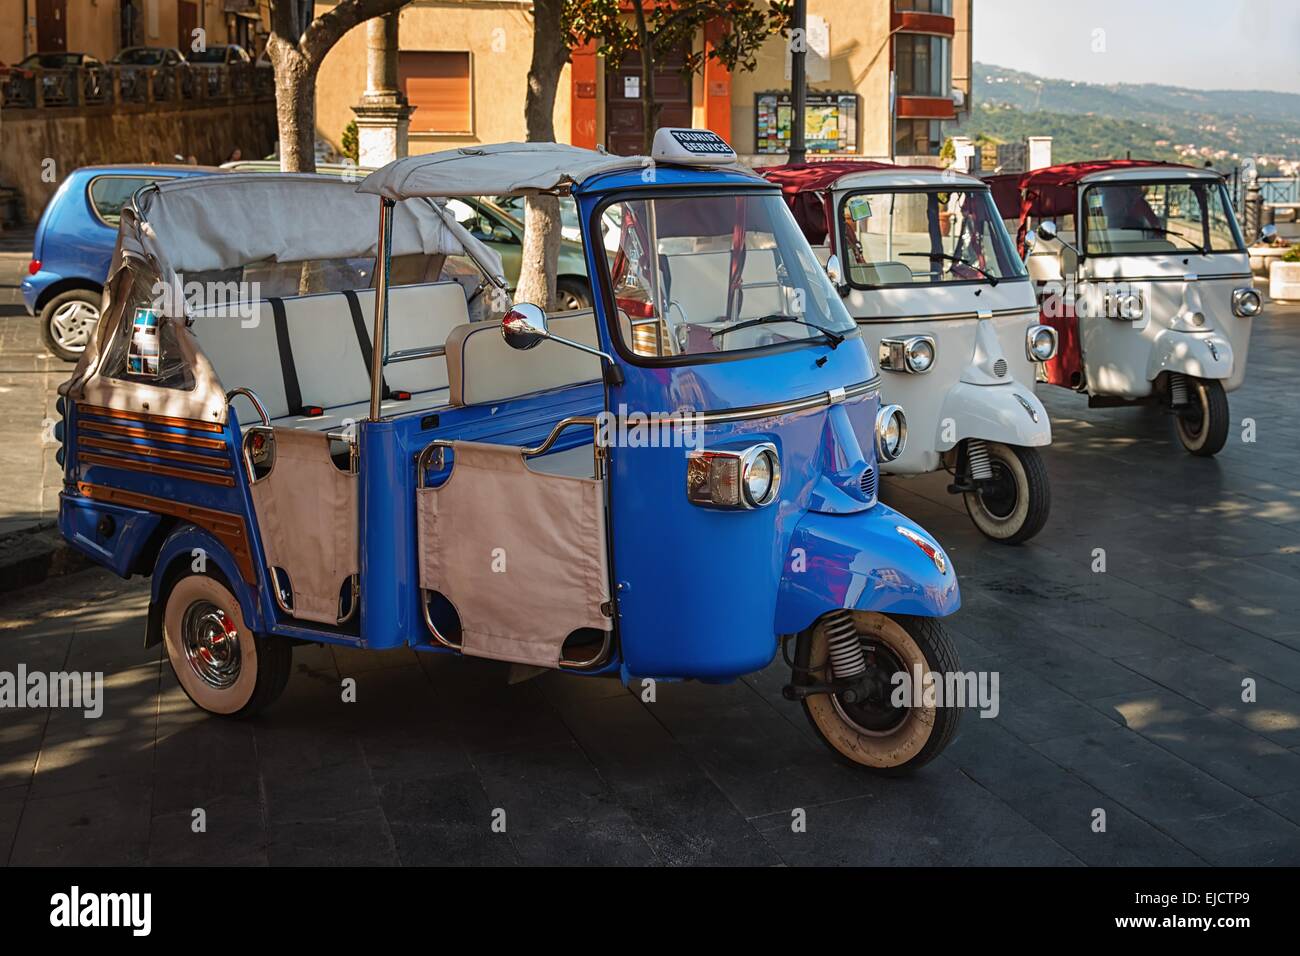 Les taxis touristiques dans le sud de l'Italie Banque D'Images